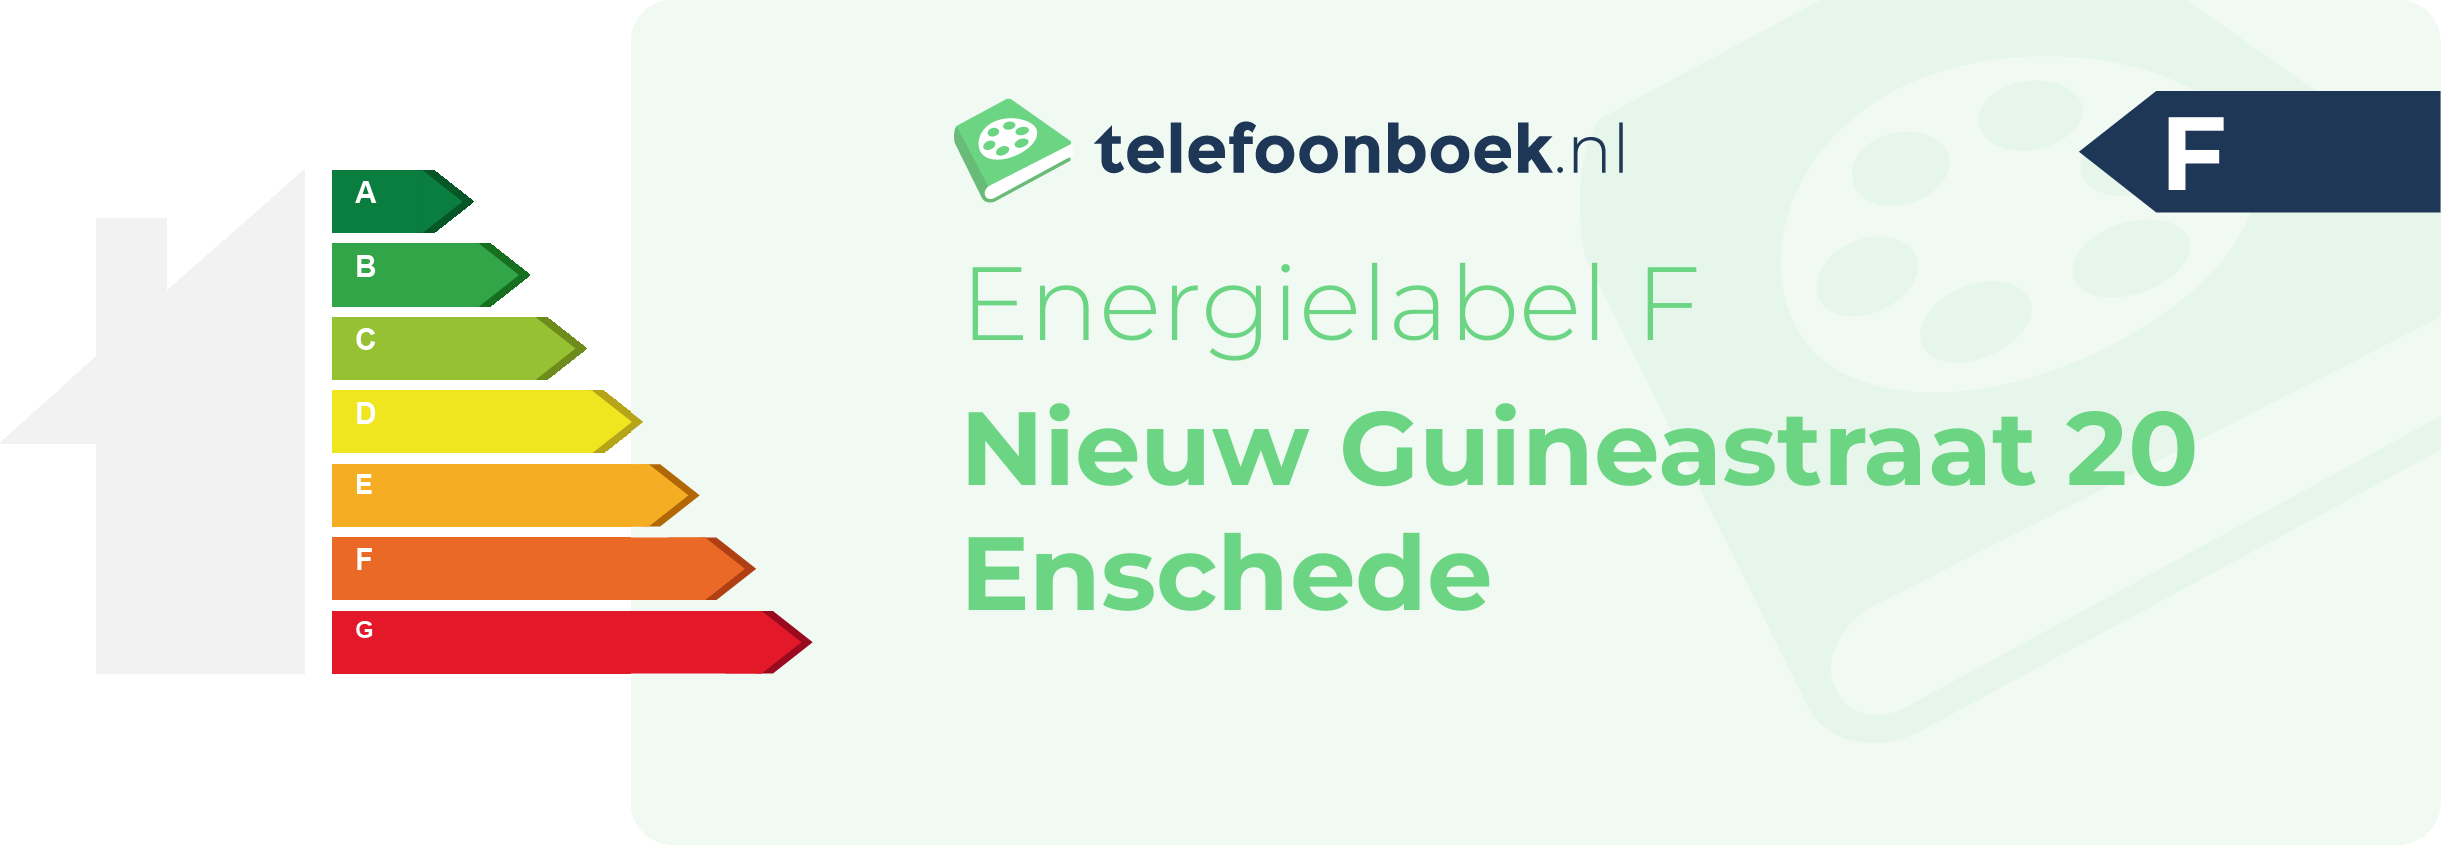 Energielabel Nieuw Guineastraat 20 Enschede